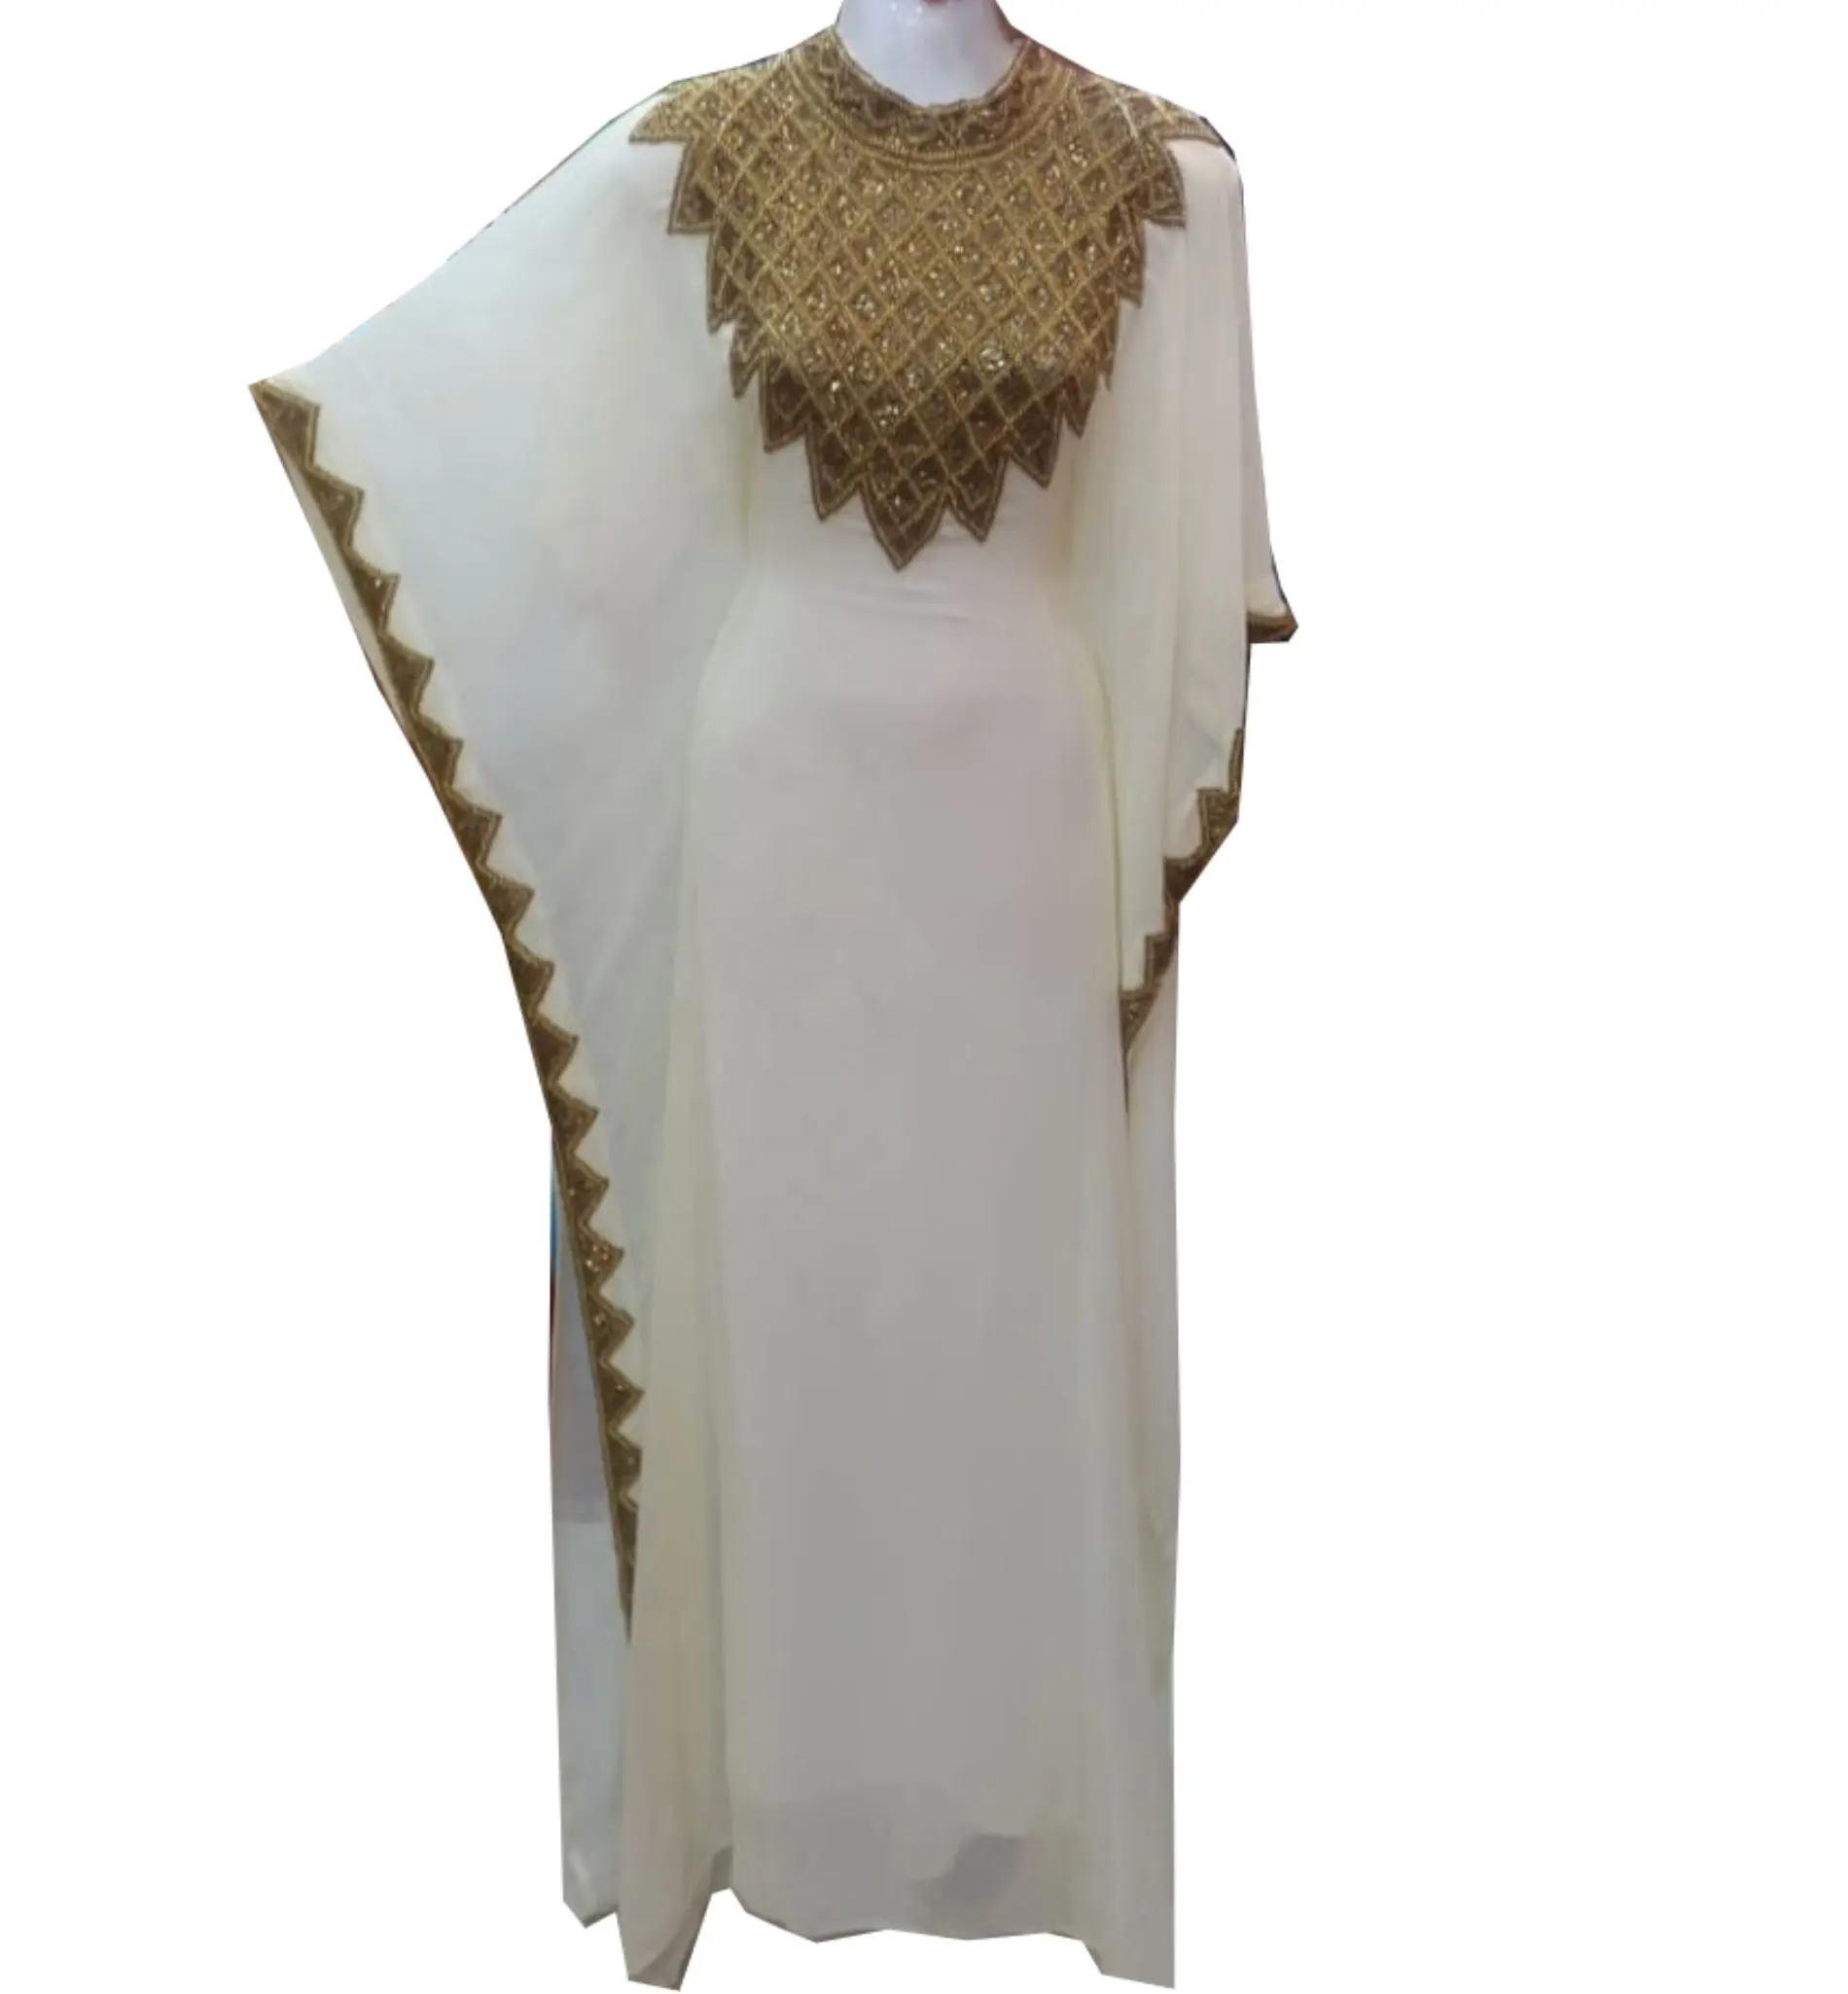 Bán Buôn Sparkling Vàng Trắng Handmade Thiết Kế Mới Rất Cổ Điển Handbeaded Dubai Phong Cách Abaya/Kaftan Ăn Mặc